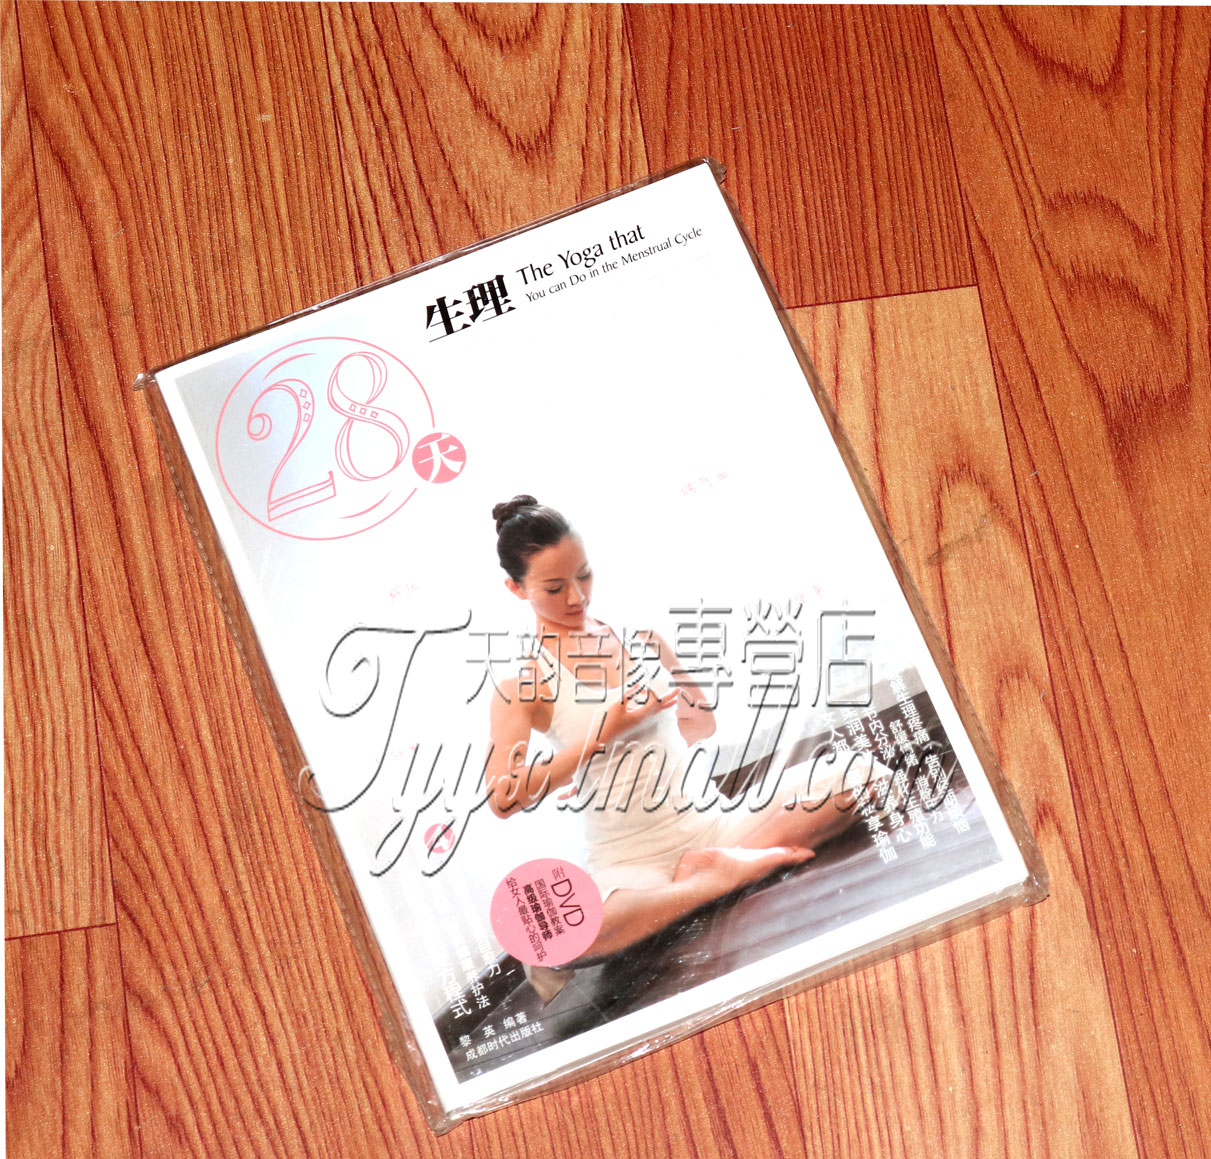 瑜伽教学 28天生理瑜伽书+DVD黎英 减压 护卵巢 调气血 经期瑜珈